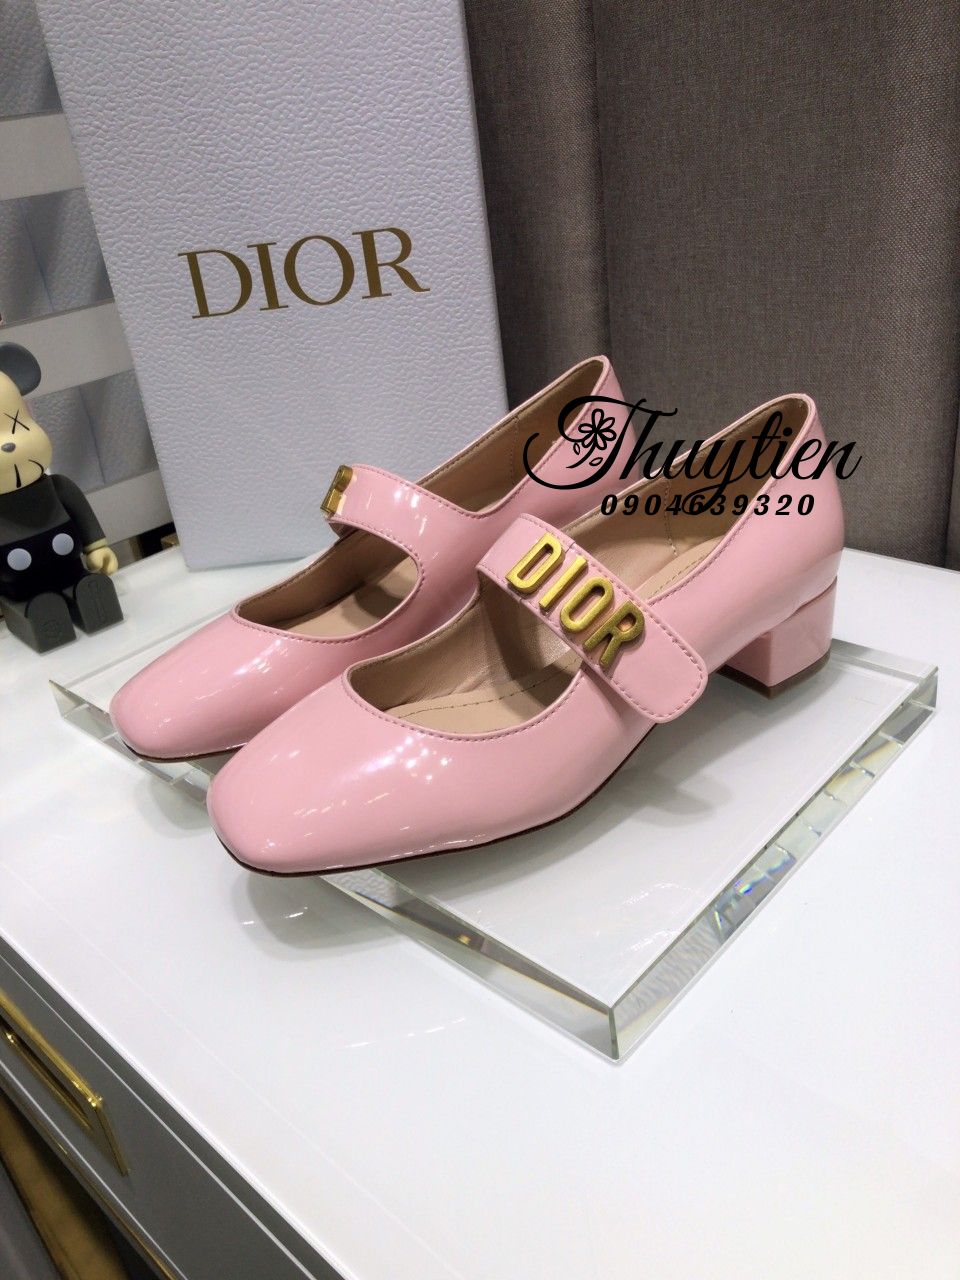 Giày Dior sneaker unisex hàng hiệu màu hồng phối ghi họa tiết